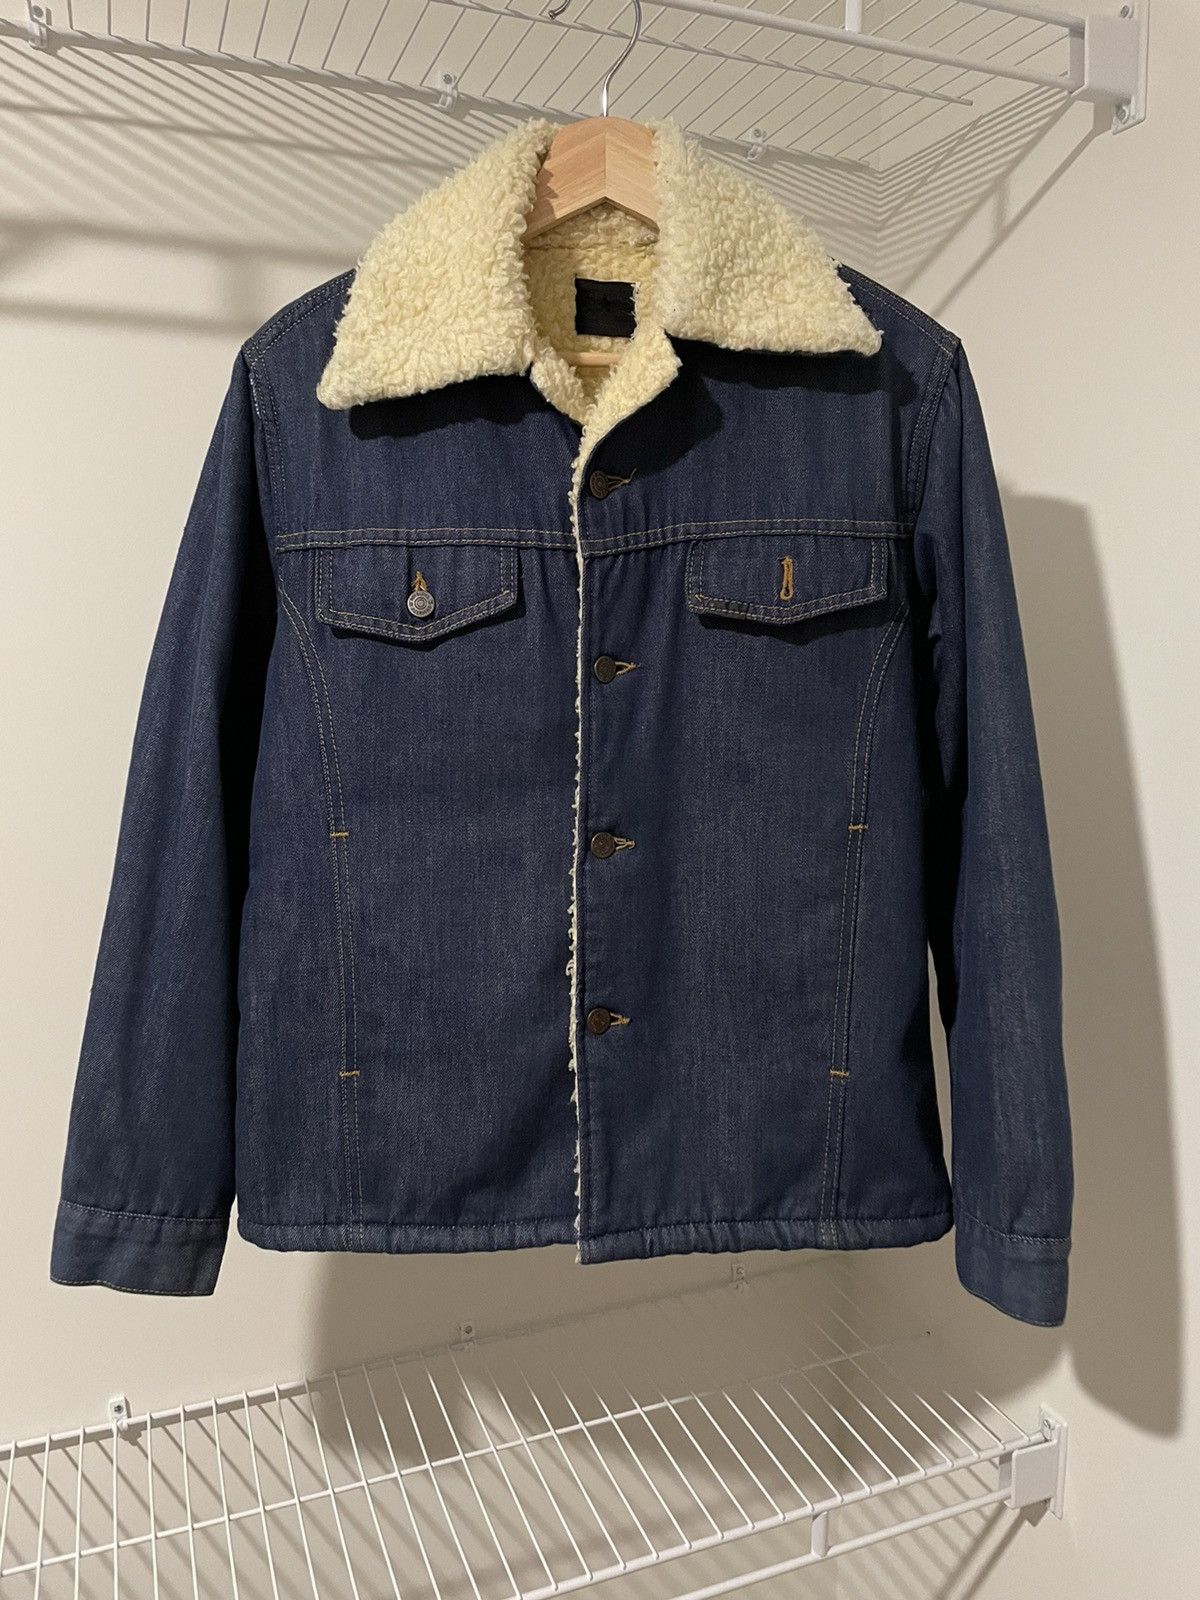 Vintage Vintage Roebuck Denim Jacket | Grailed